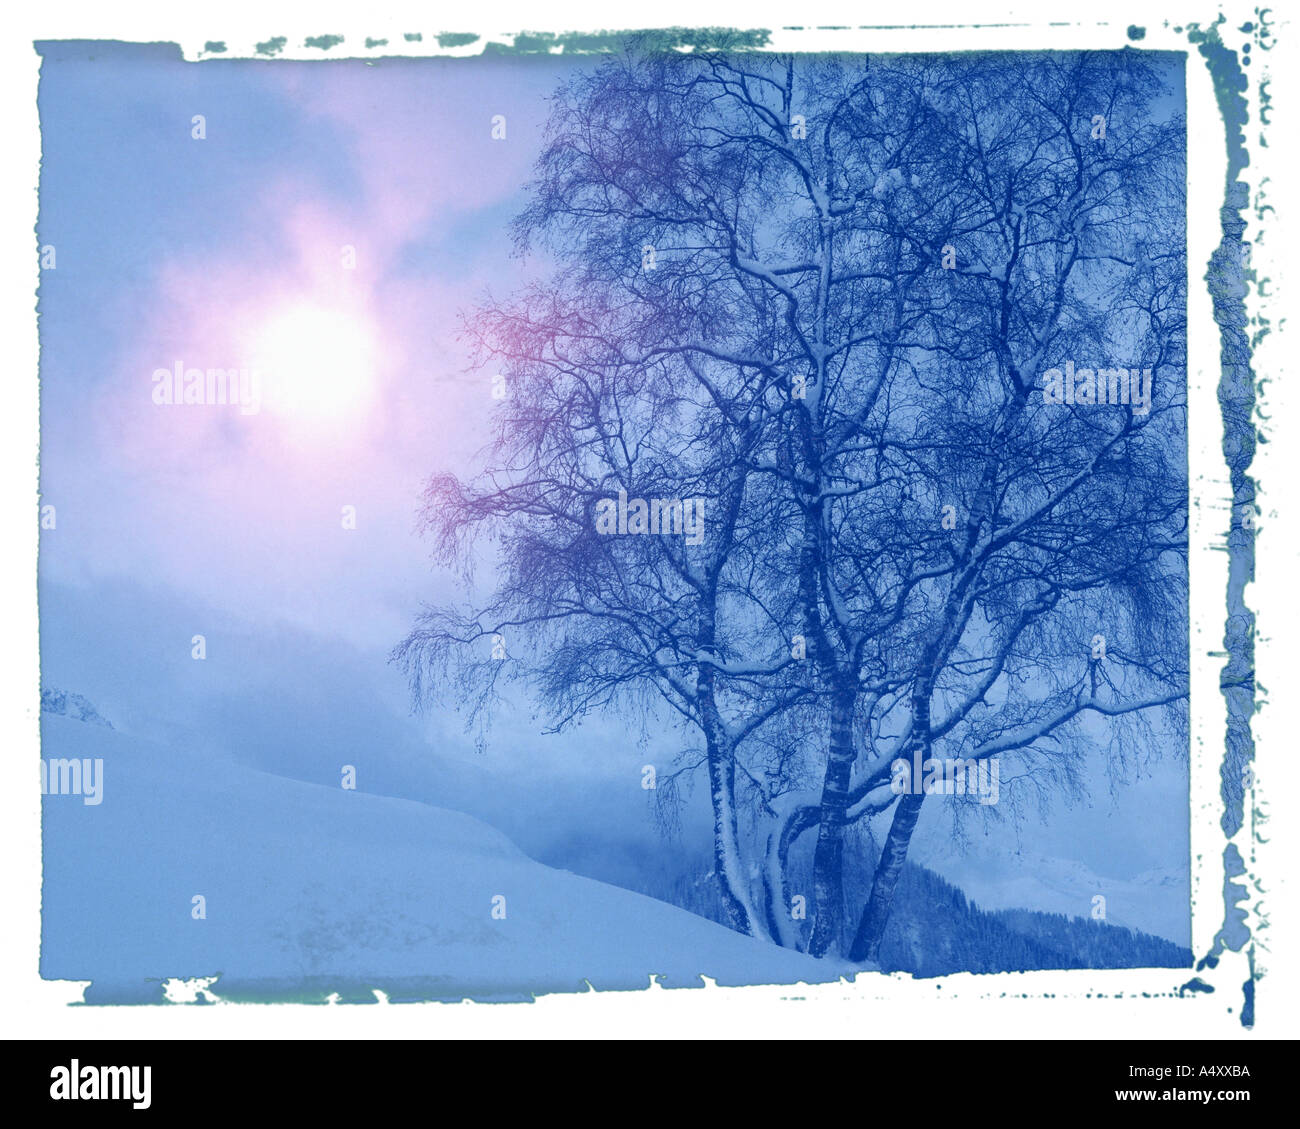 CH - GRAUBÜNDEN: Winterscene in der Nähe von Tarasp im unteren Engadin Stockfoto